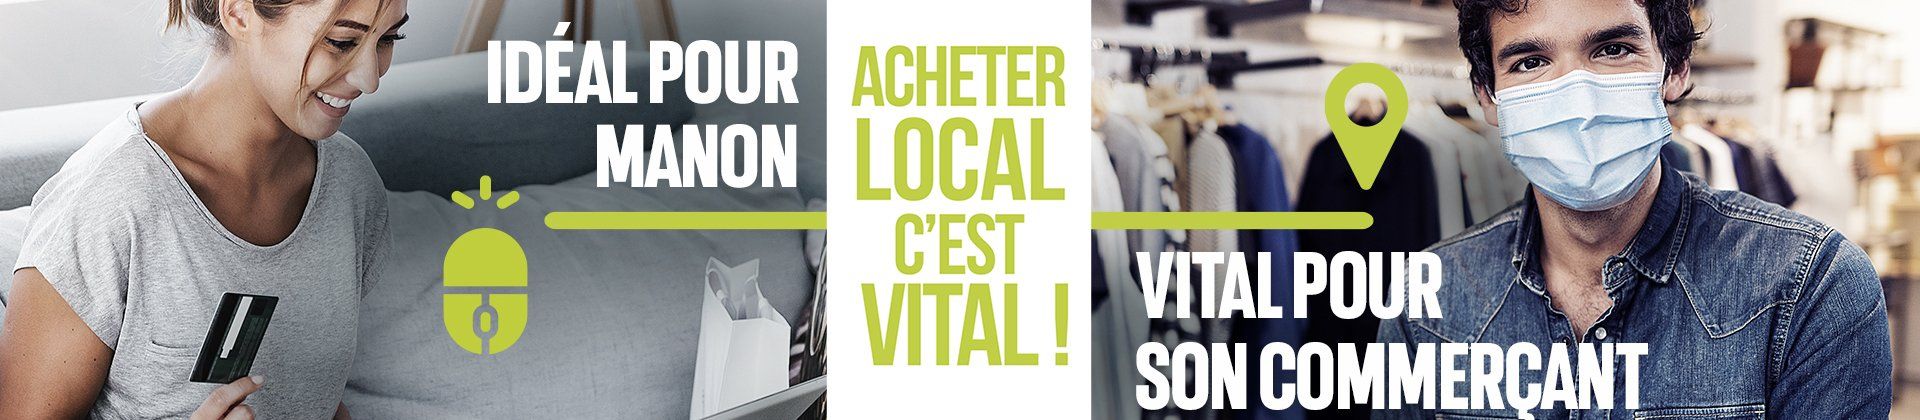 bannière de la page avec la campagne de communication avec texte "Acheter local c'est vital ! Idéal pour Manon, vital pour son commerçant" 